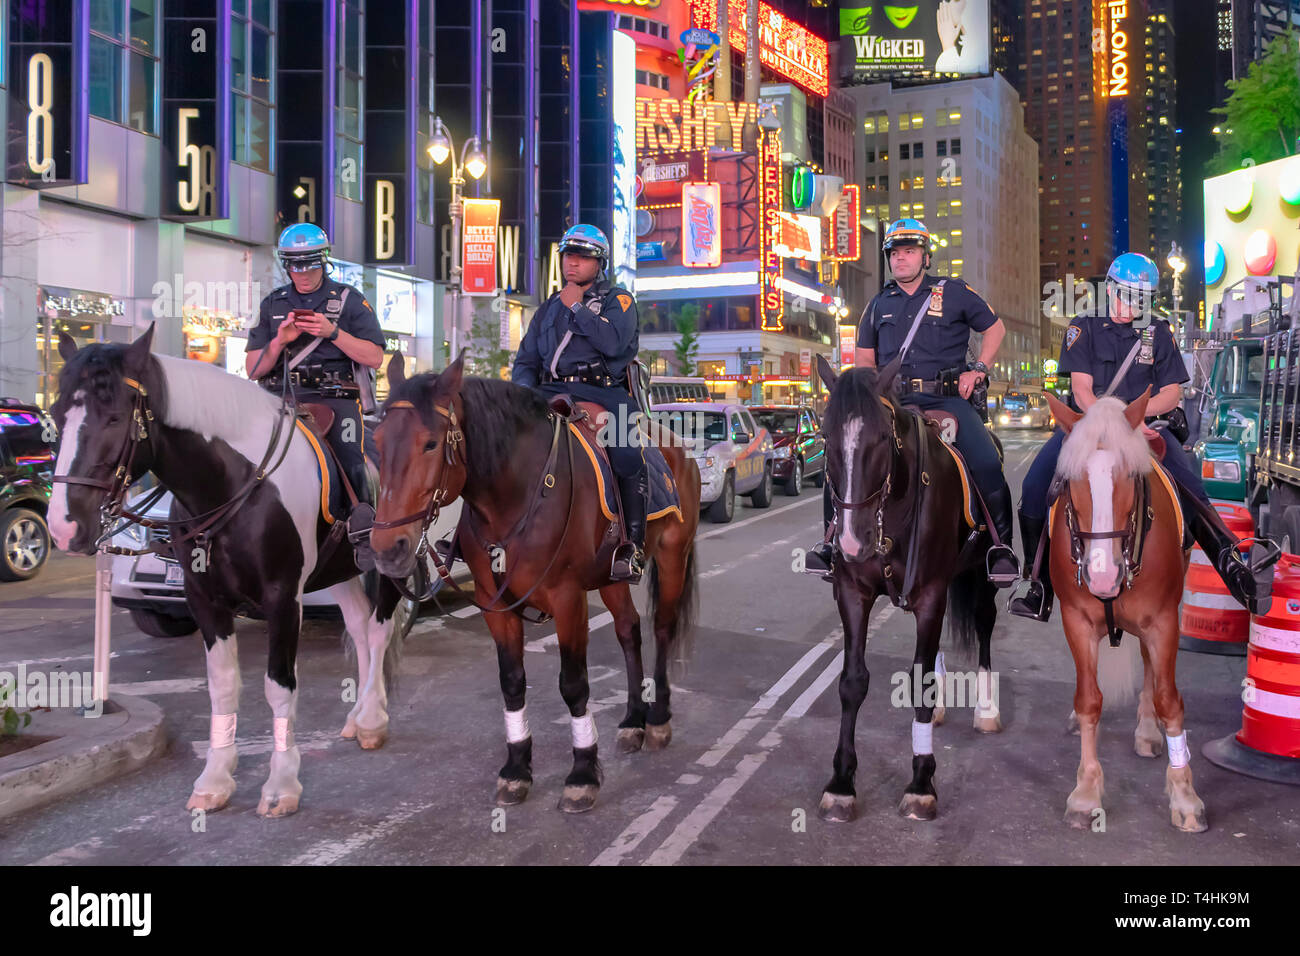 La ville de New York, USA - 7 juin 2017 : les agents de police de la Police à cheval à Times Square, New York City. Canada patrouiller la nuit dans Times Squa Banque D'Images